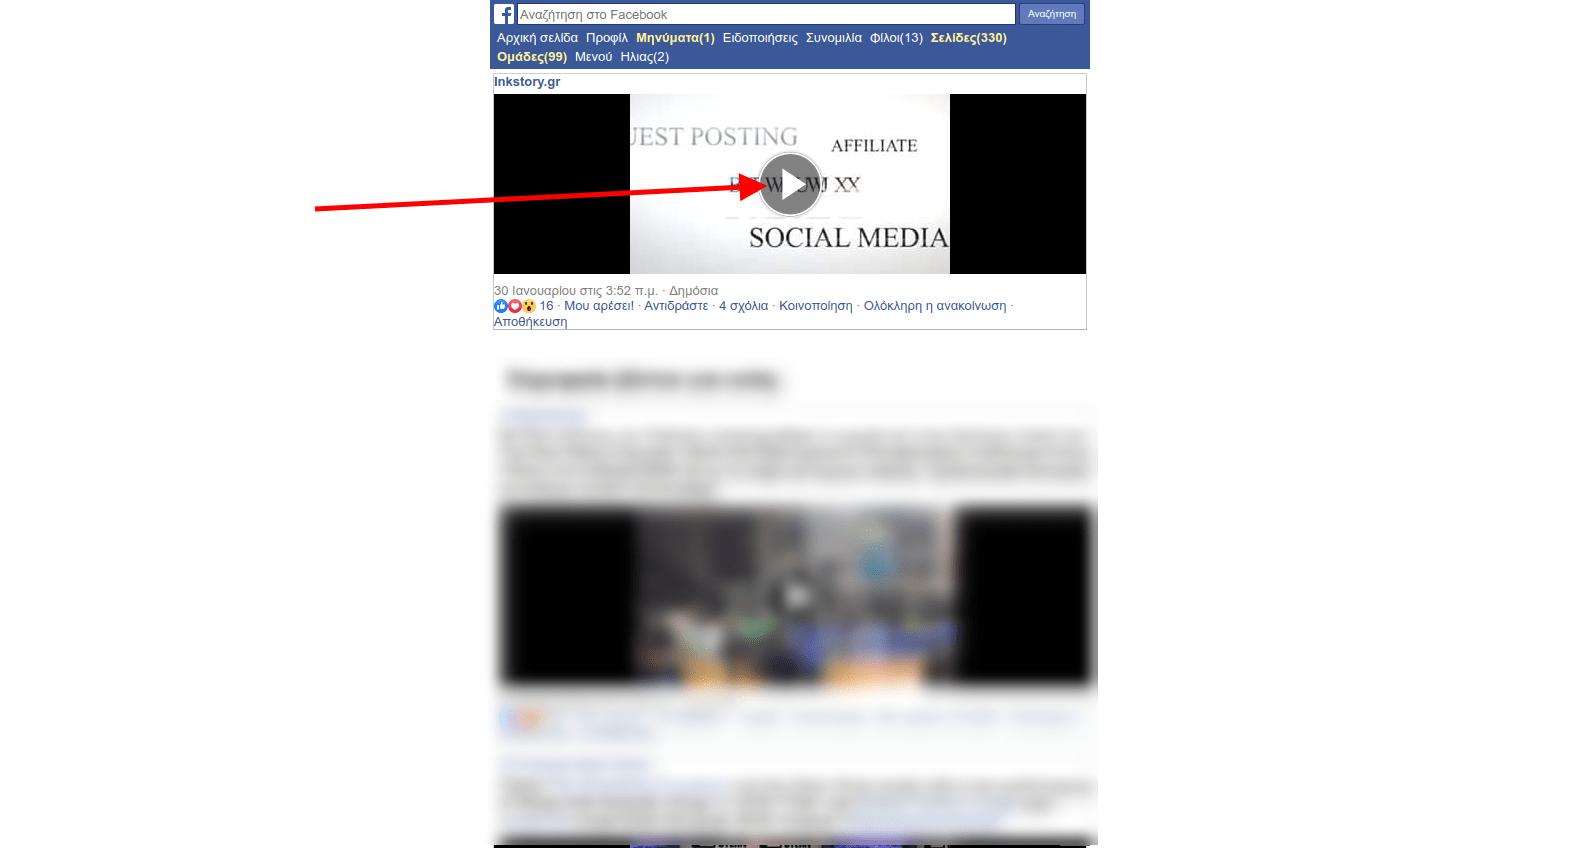 Αποθήκευση βίντεο από το Facebook στο κινητό ή τον υπολογιστή